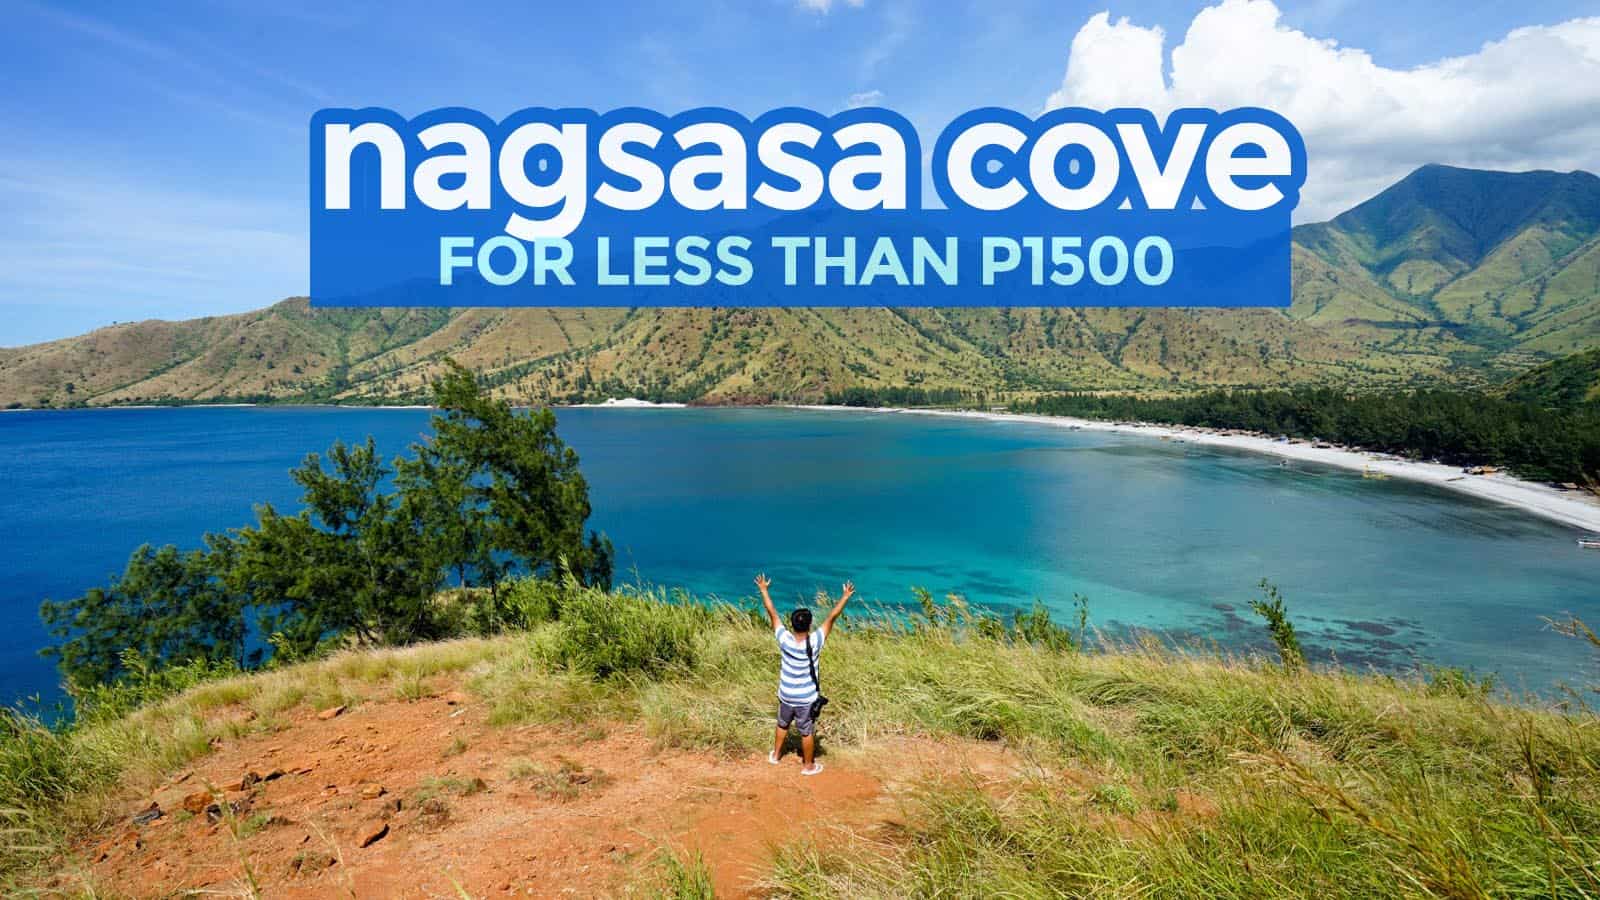 NAGSASA COVE: Travel Guide & Budget Itinerary